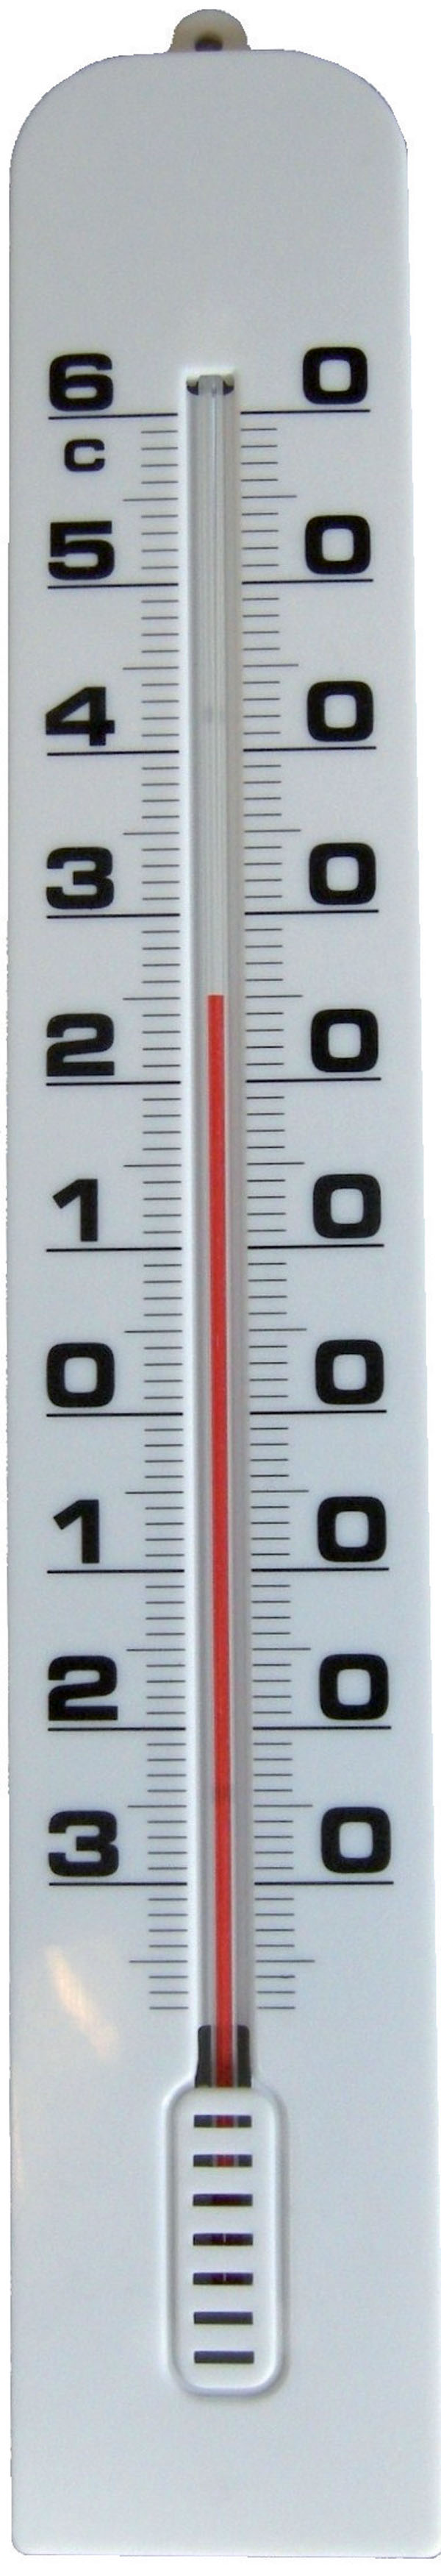 Thermomètre à Mercure De Chambre Sur Un Gros Plan De Fond Blanc